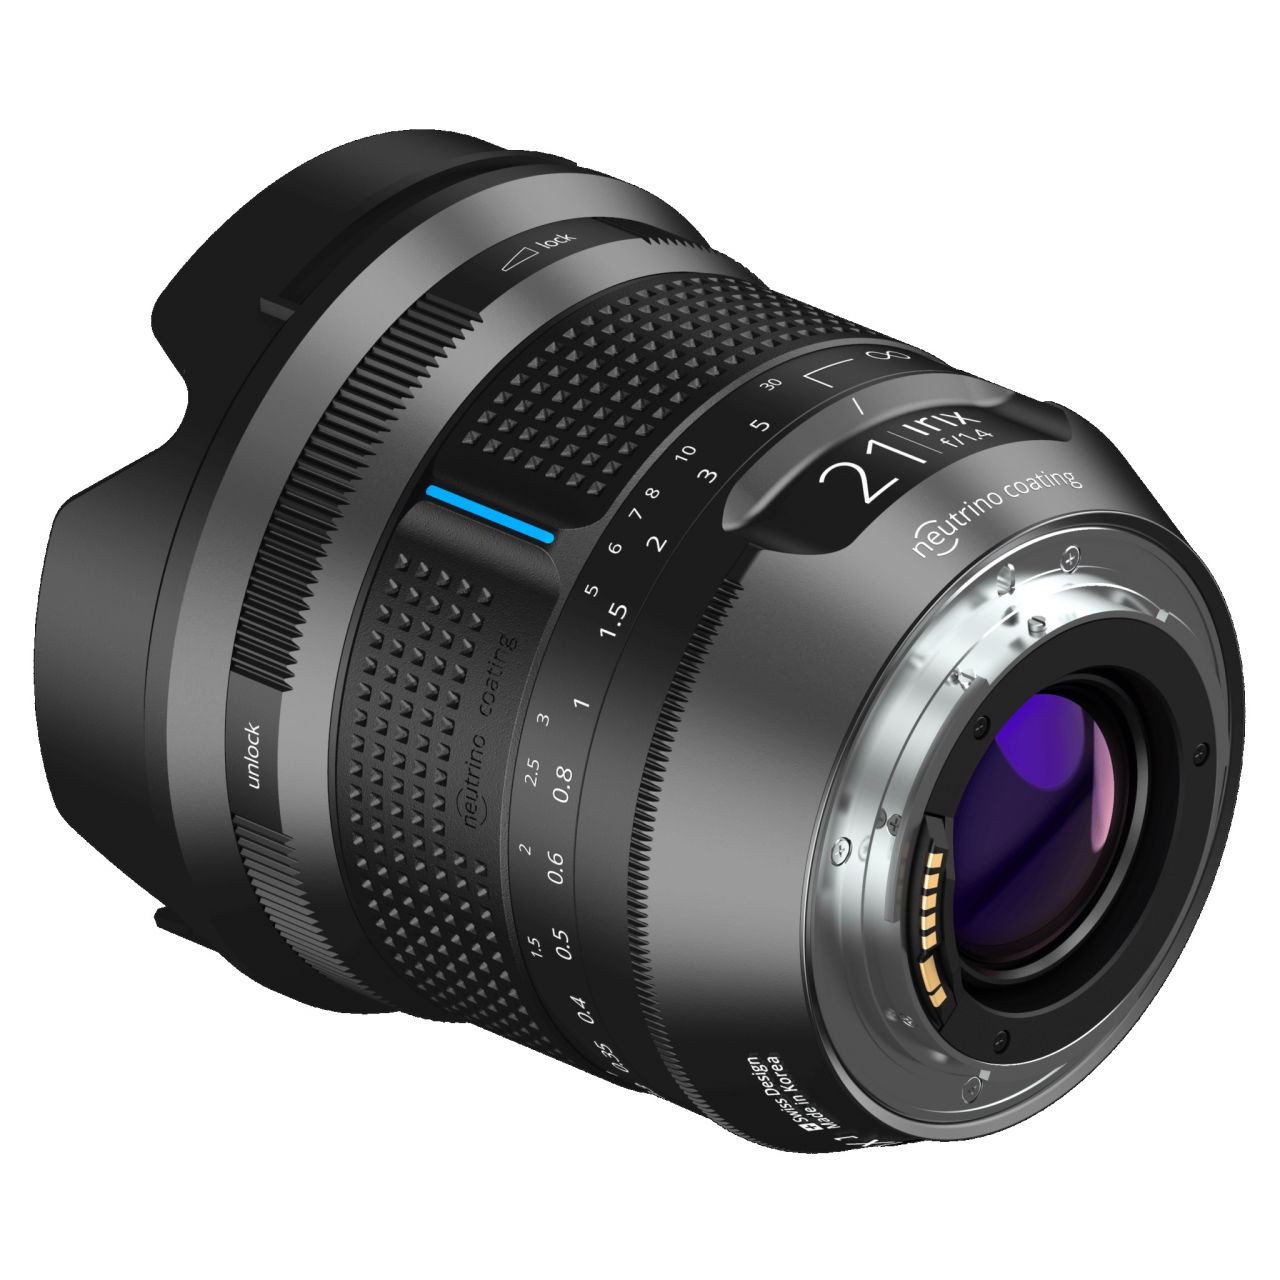 Irix Lens 21mm f/1.4 Dragonfly Pentax K - nagylátószögű objektív